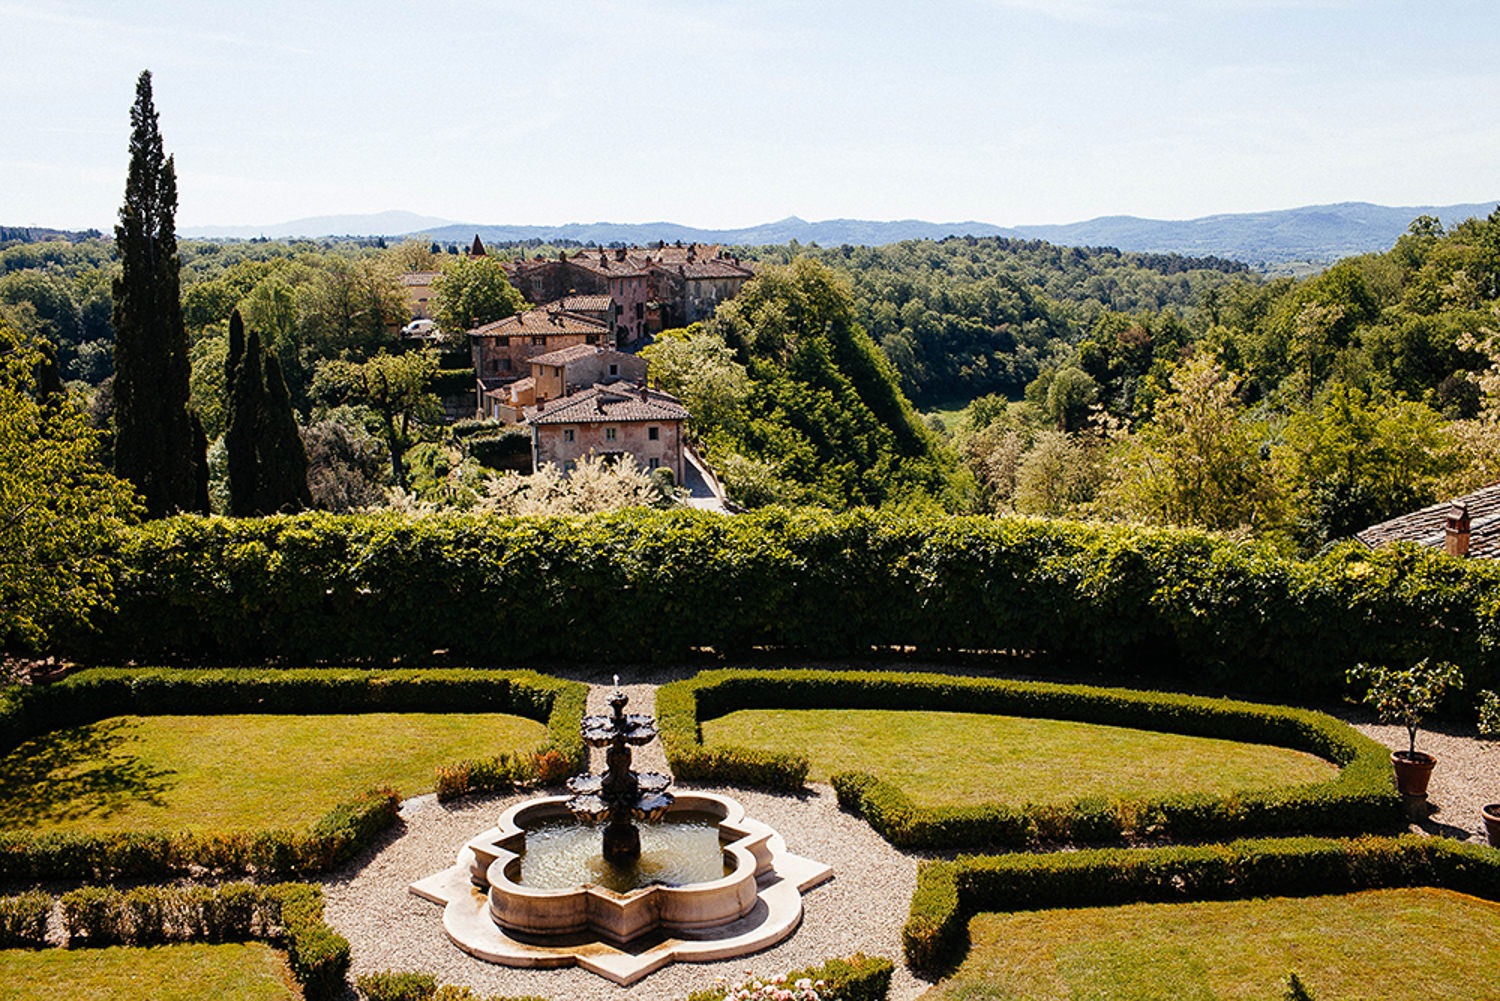 5 unique wedding venues in Tuscany | Cindy Salgado Wedding Planner